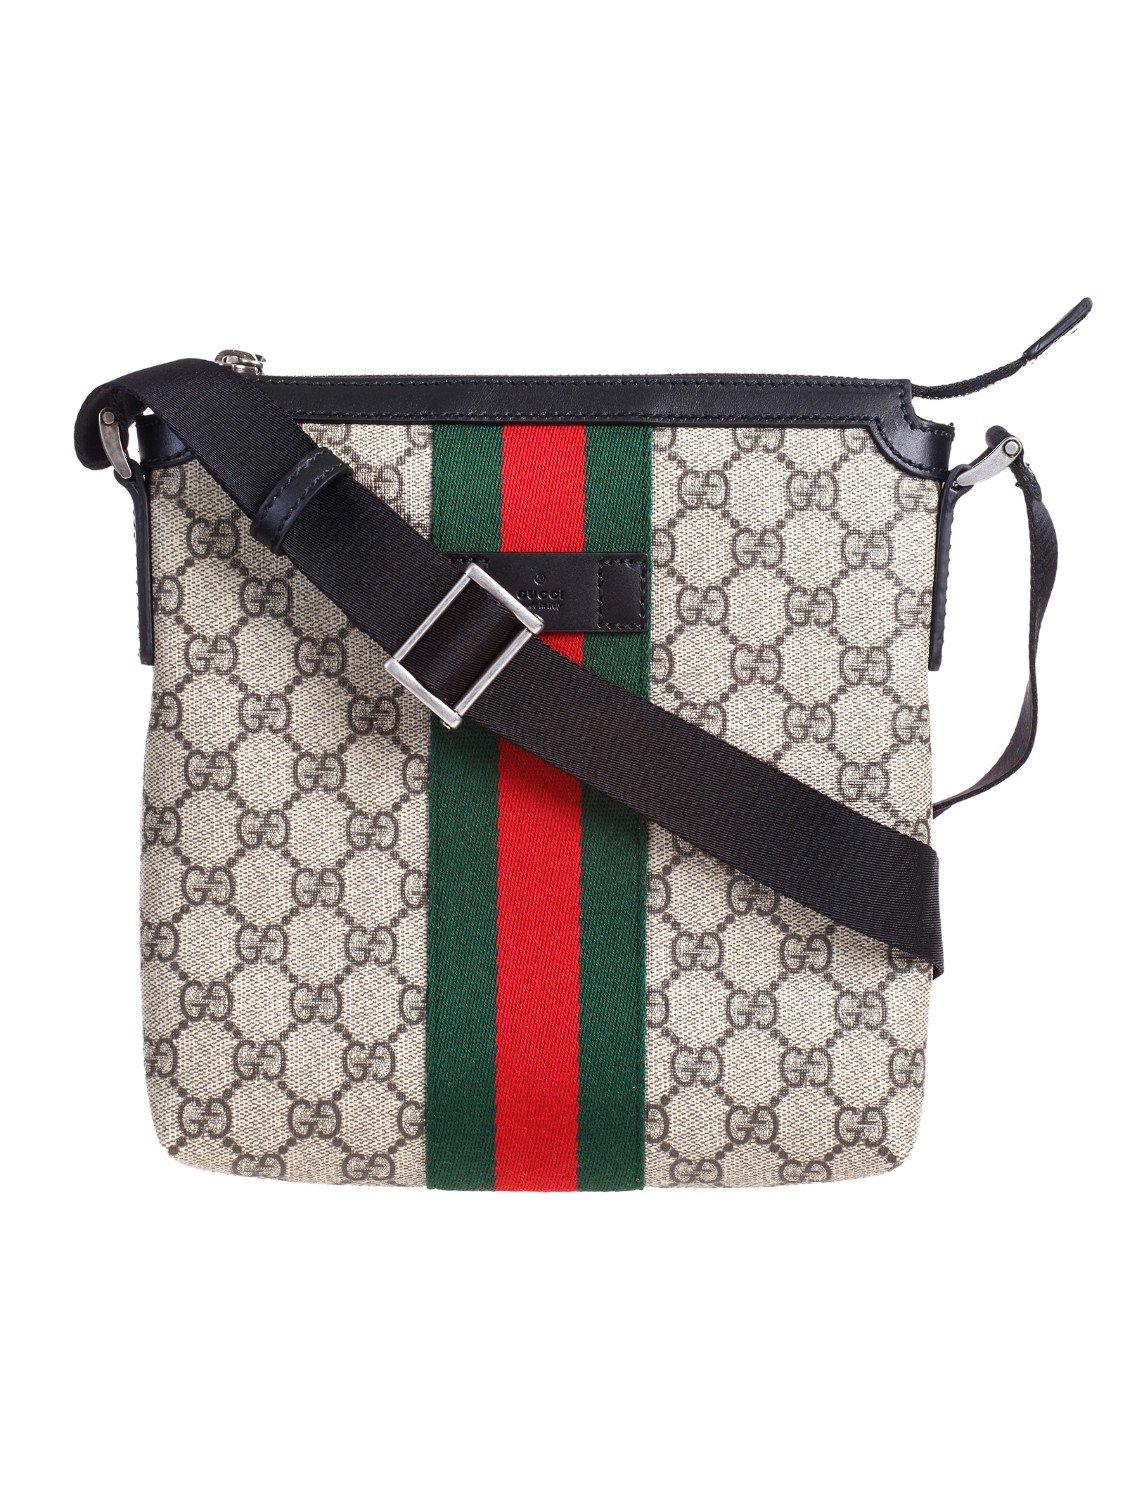 Gucci Canvas Beige GG Supreme Flat Messenger Bag in Natural for Men - Lyst